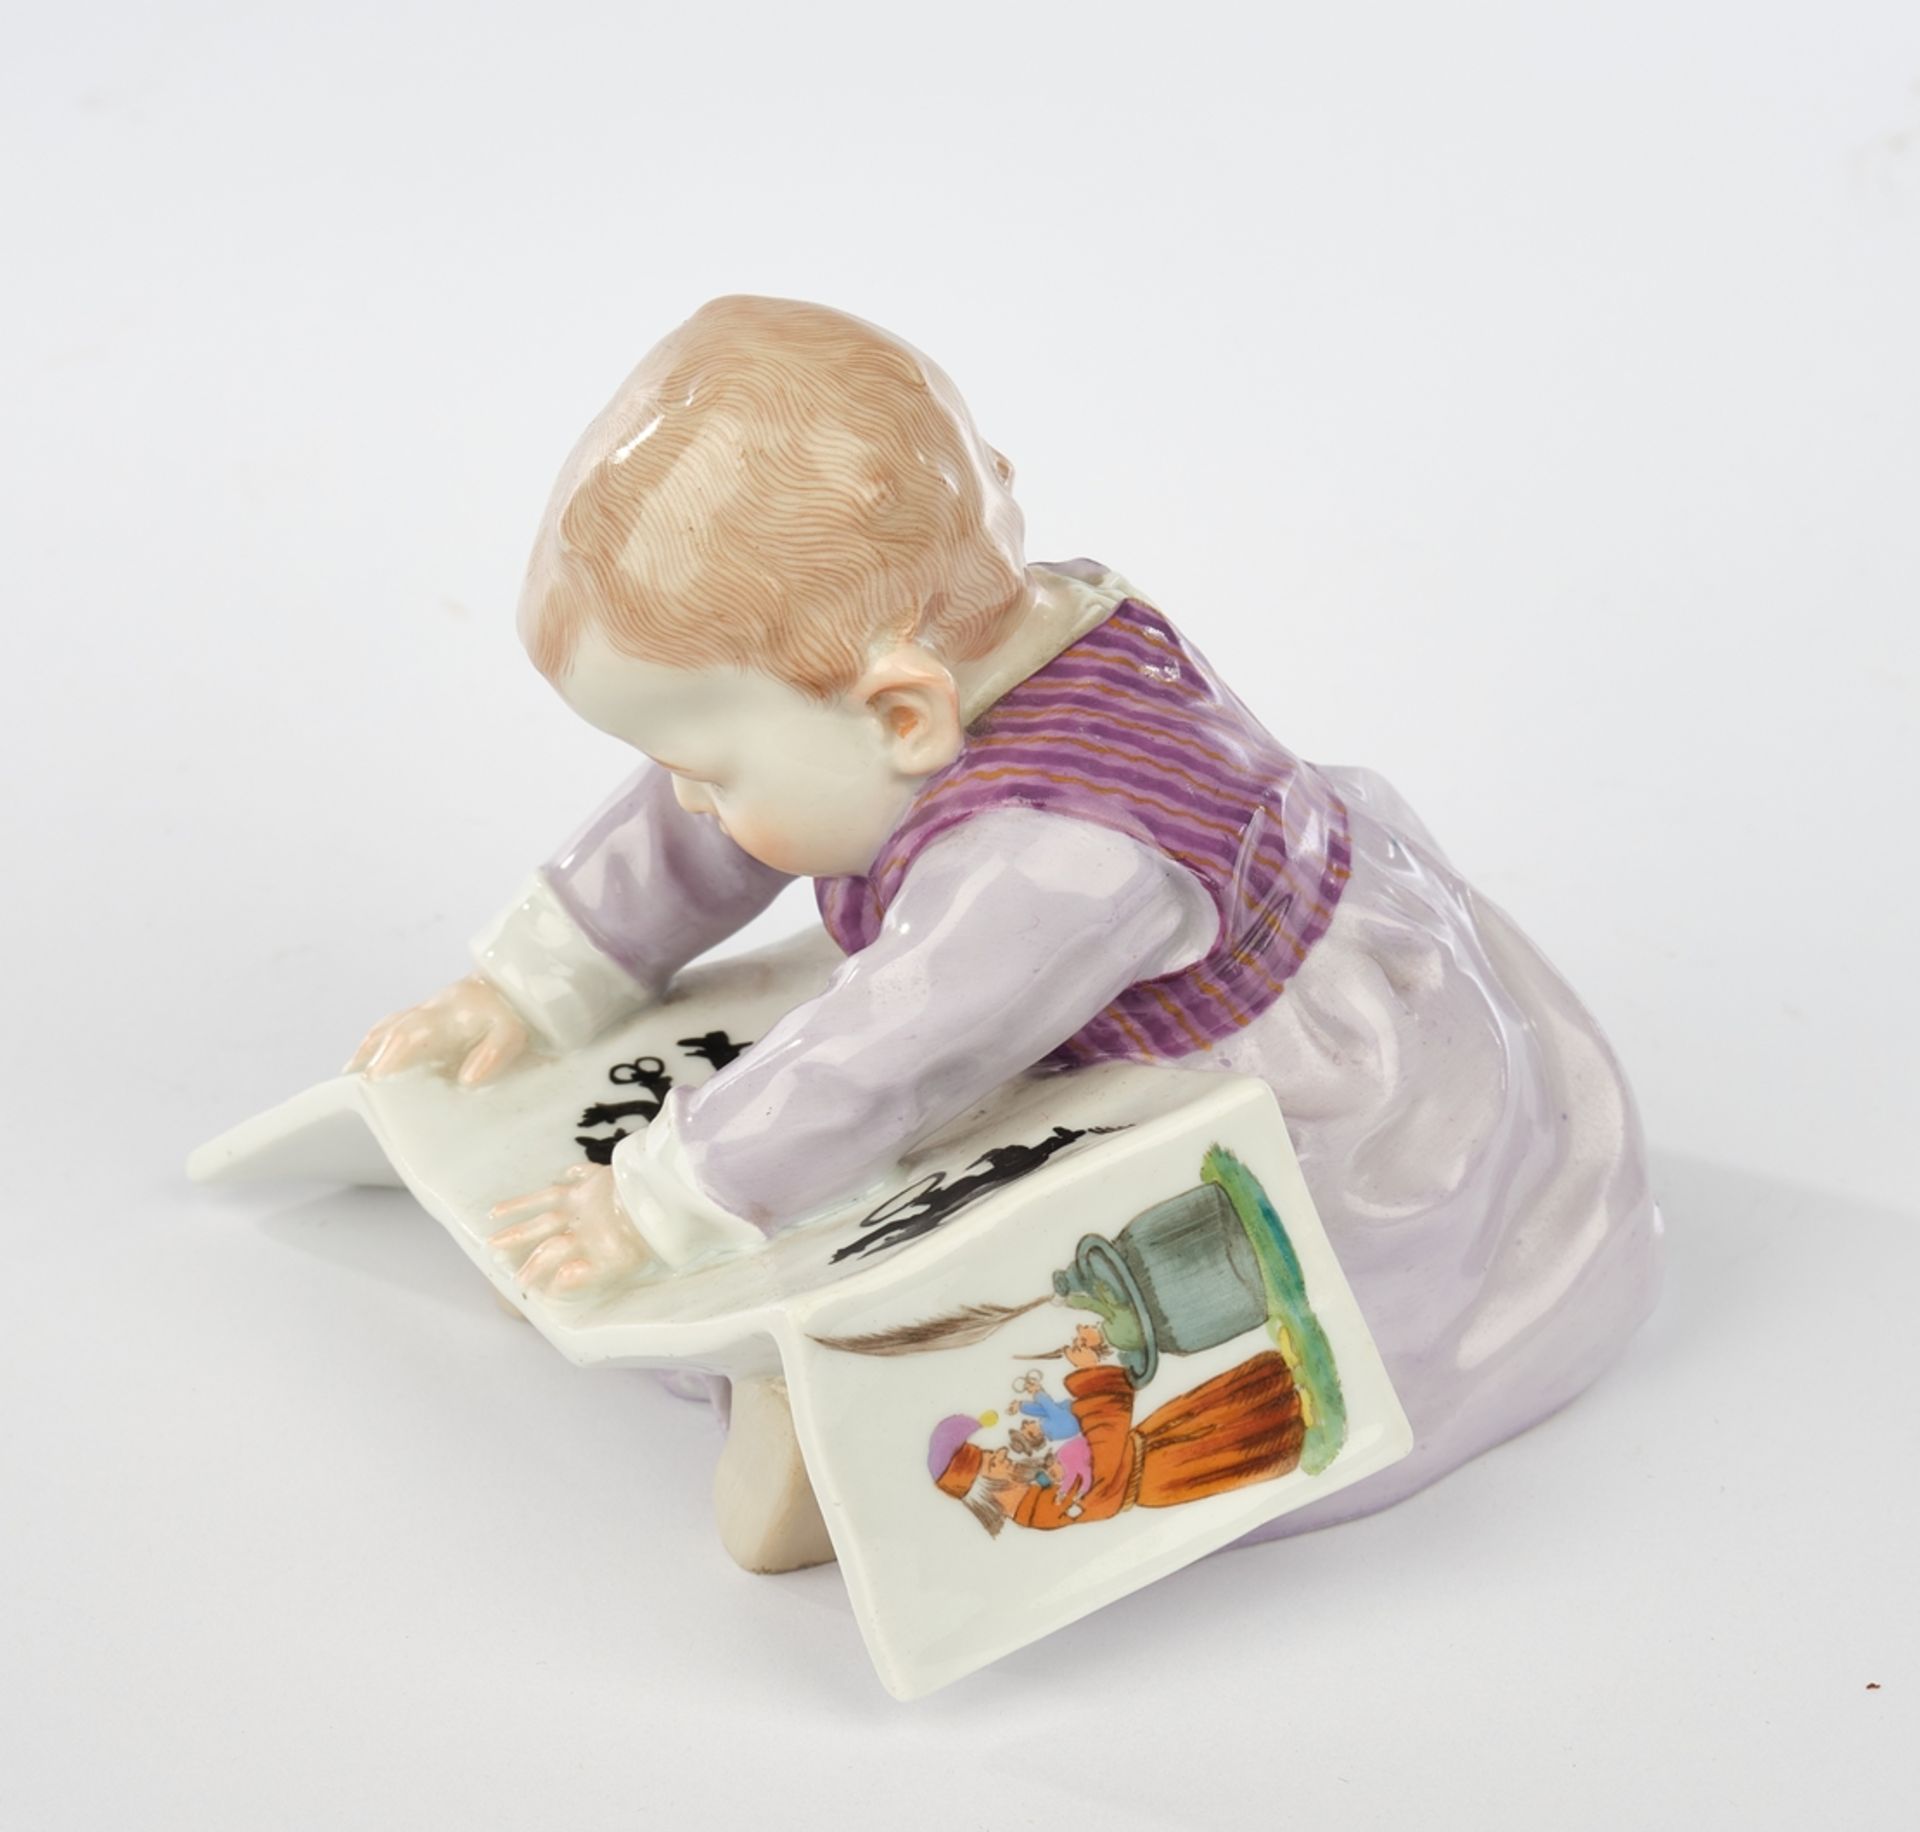 Porzellanfigur, "Kind mit Bilderbuch, groß", Meissen, Schwertermarke, 1904-1924, 1. Wahl, Modellnum